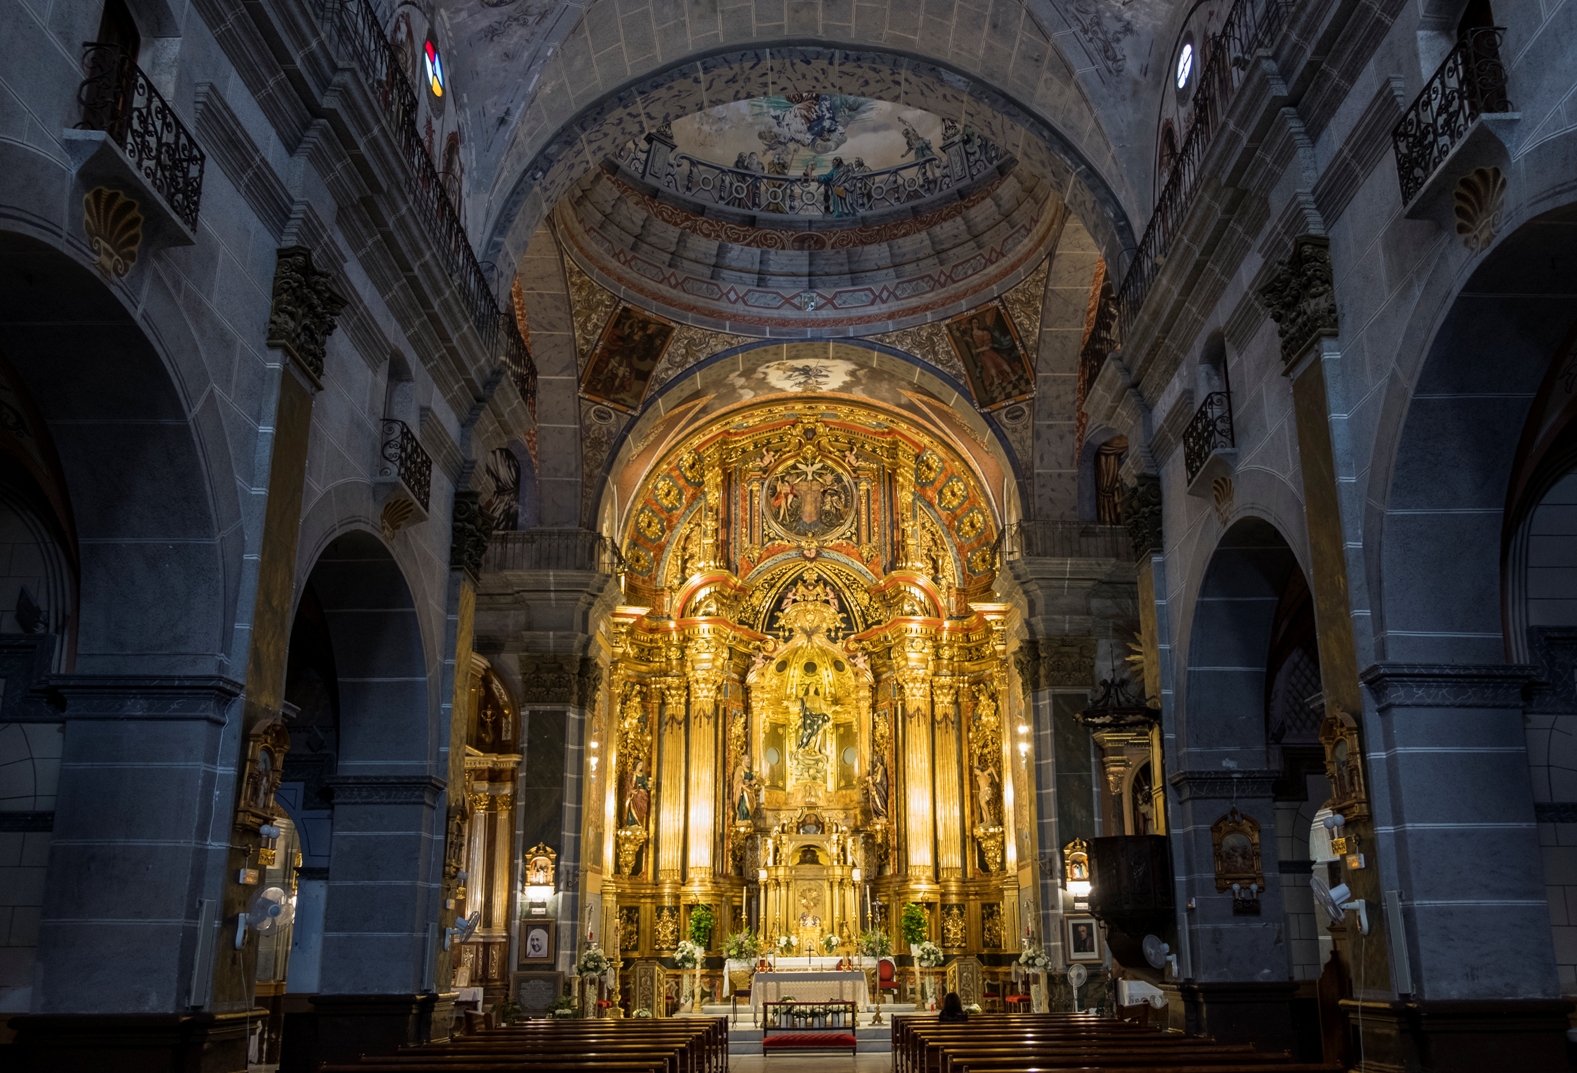 Detalle del interior con el monumental retablo al fondo © Fotografía: Paco Bonilla